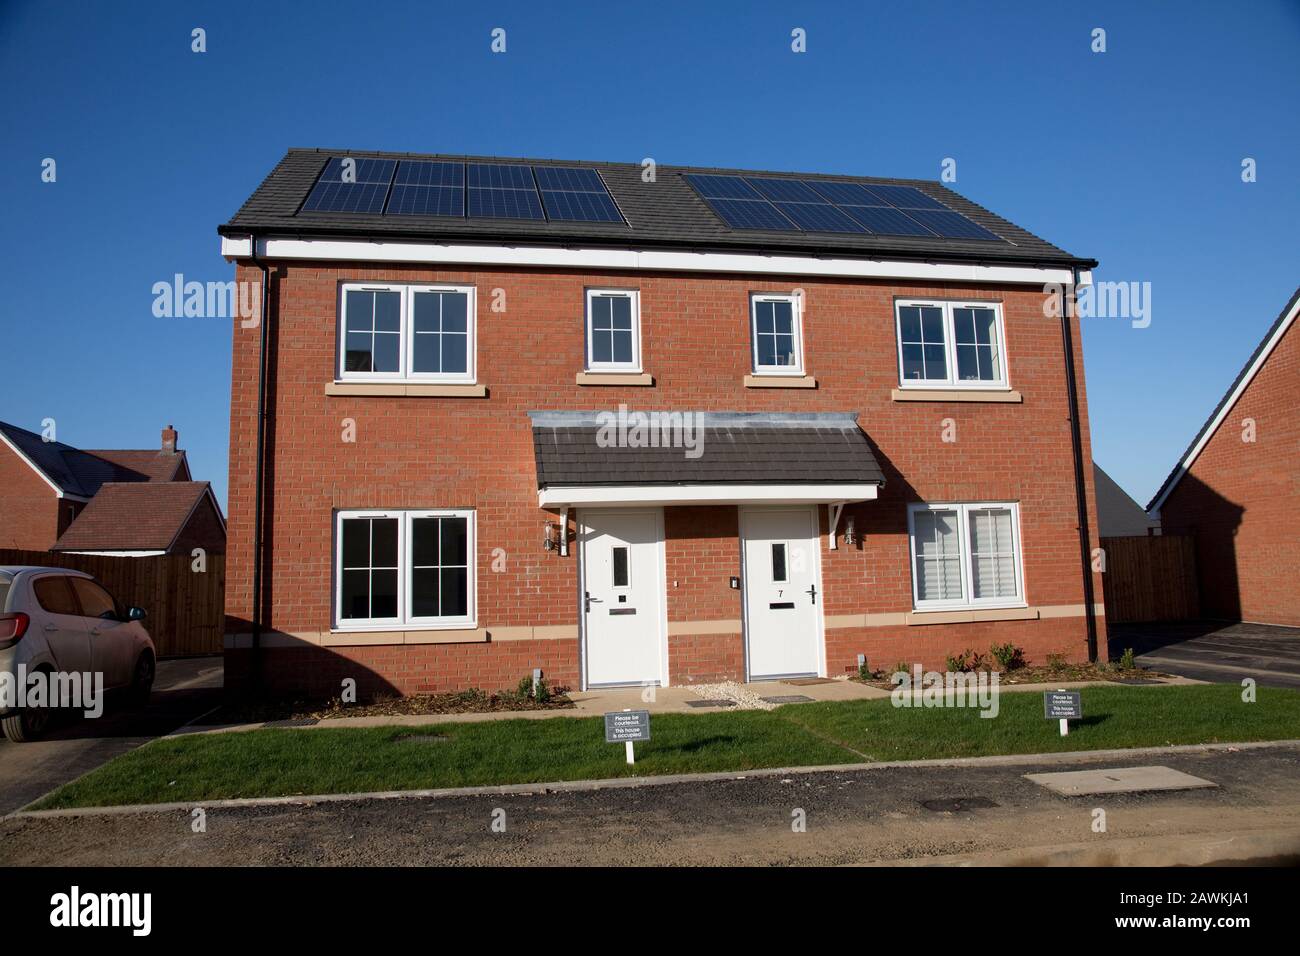 Nuove case in mattoni rossi su un piccolo sviluppo ben definito, ma solo due delle 43 case in loco hanno pannelli fotovoltaici solari. Tnese sono case apparentemente sociali Foto Stock